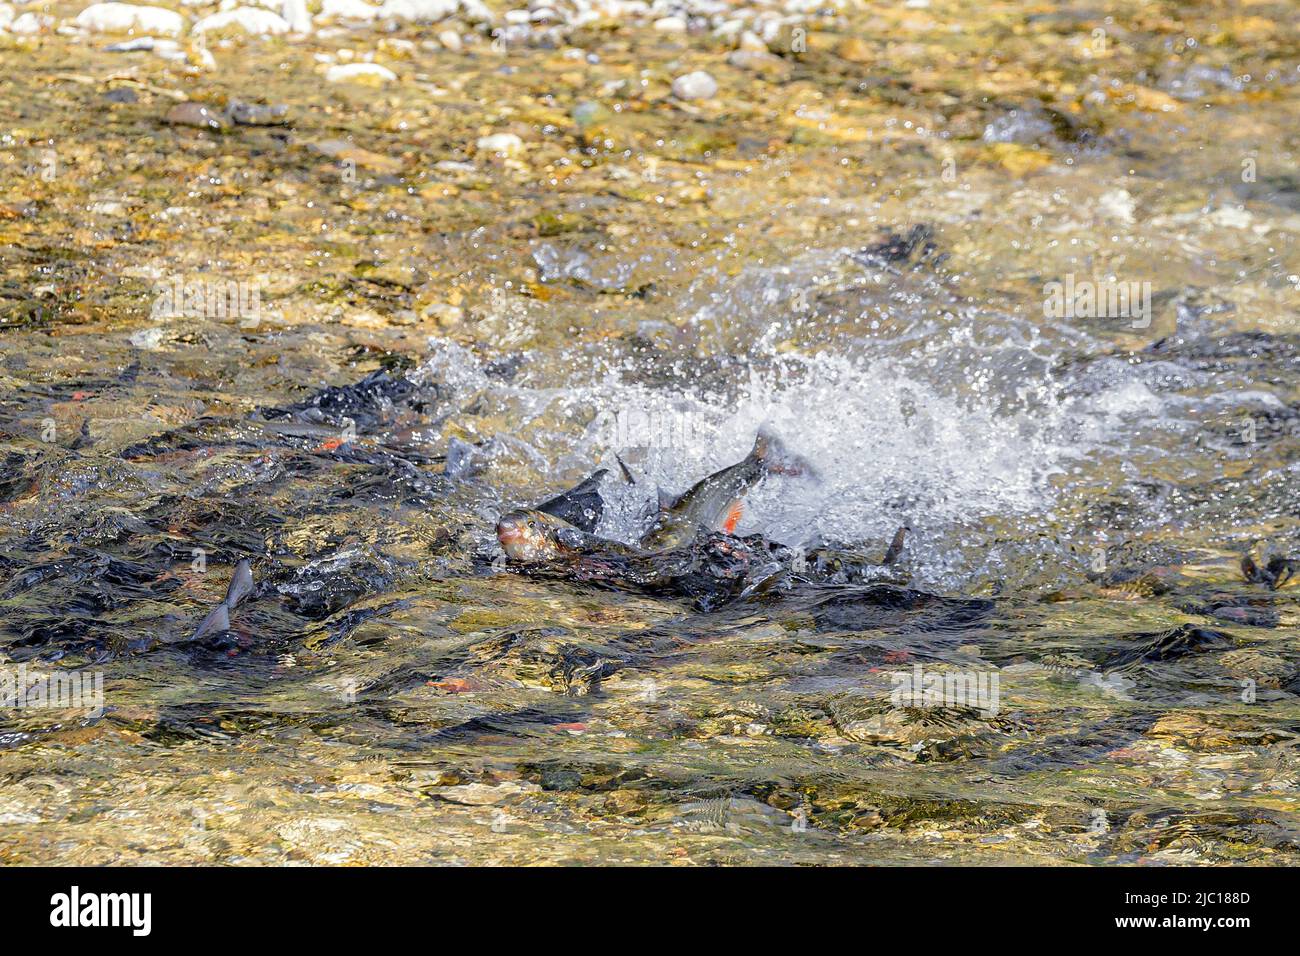 Nase (Chondrostoma naso), desove, salto de delfín de la hembra después de poner huevos, Alemania, Baviera, Mangfall Foto de stock